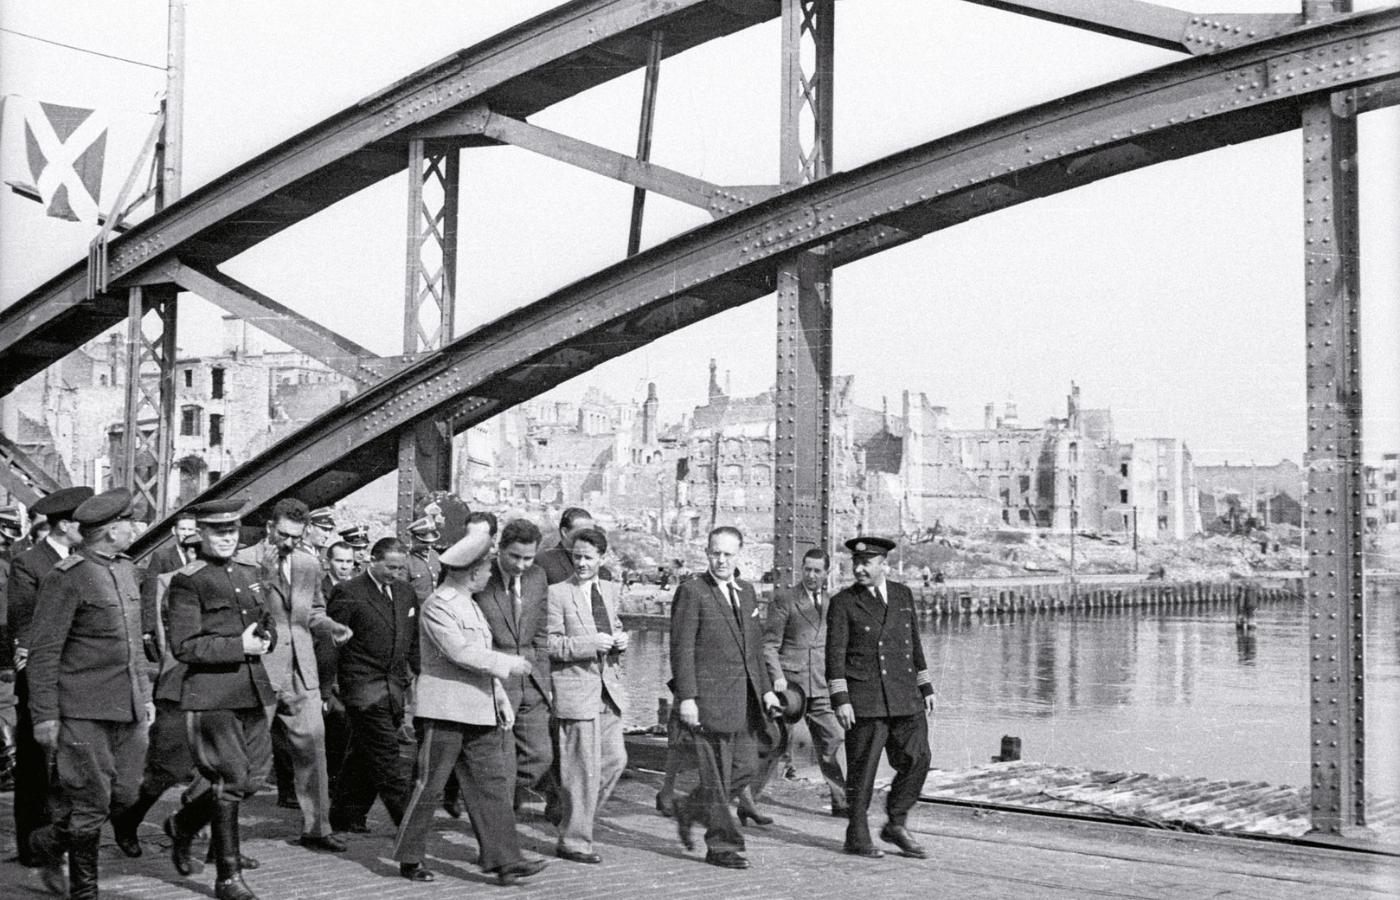 Uroczystość przekazania portu szczecińskiego przez władze radzieckie stronie polskiej na prowizorycznej kładce położonej na zniszczonym moście Długim, 19 września 1947 r.